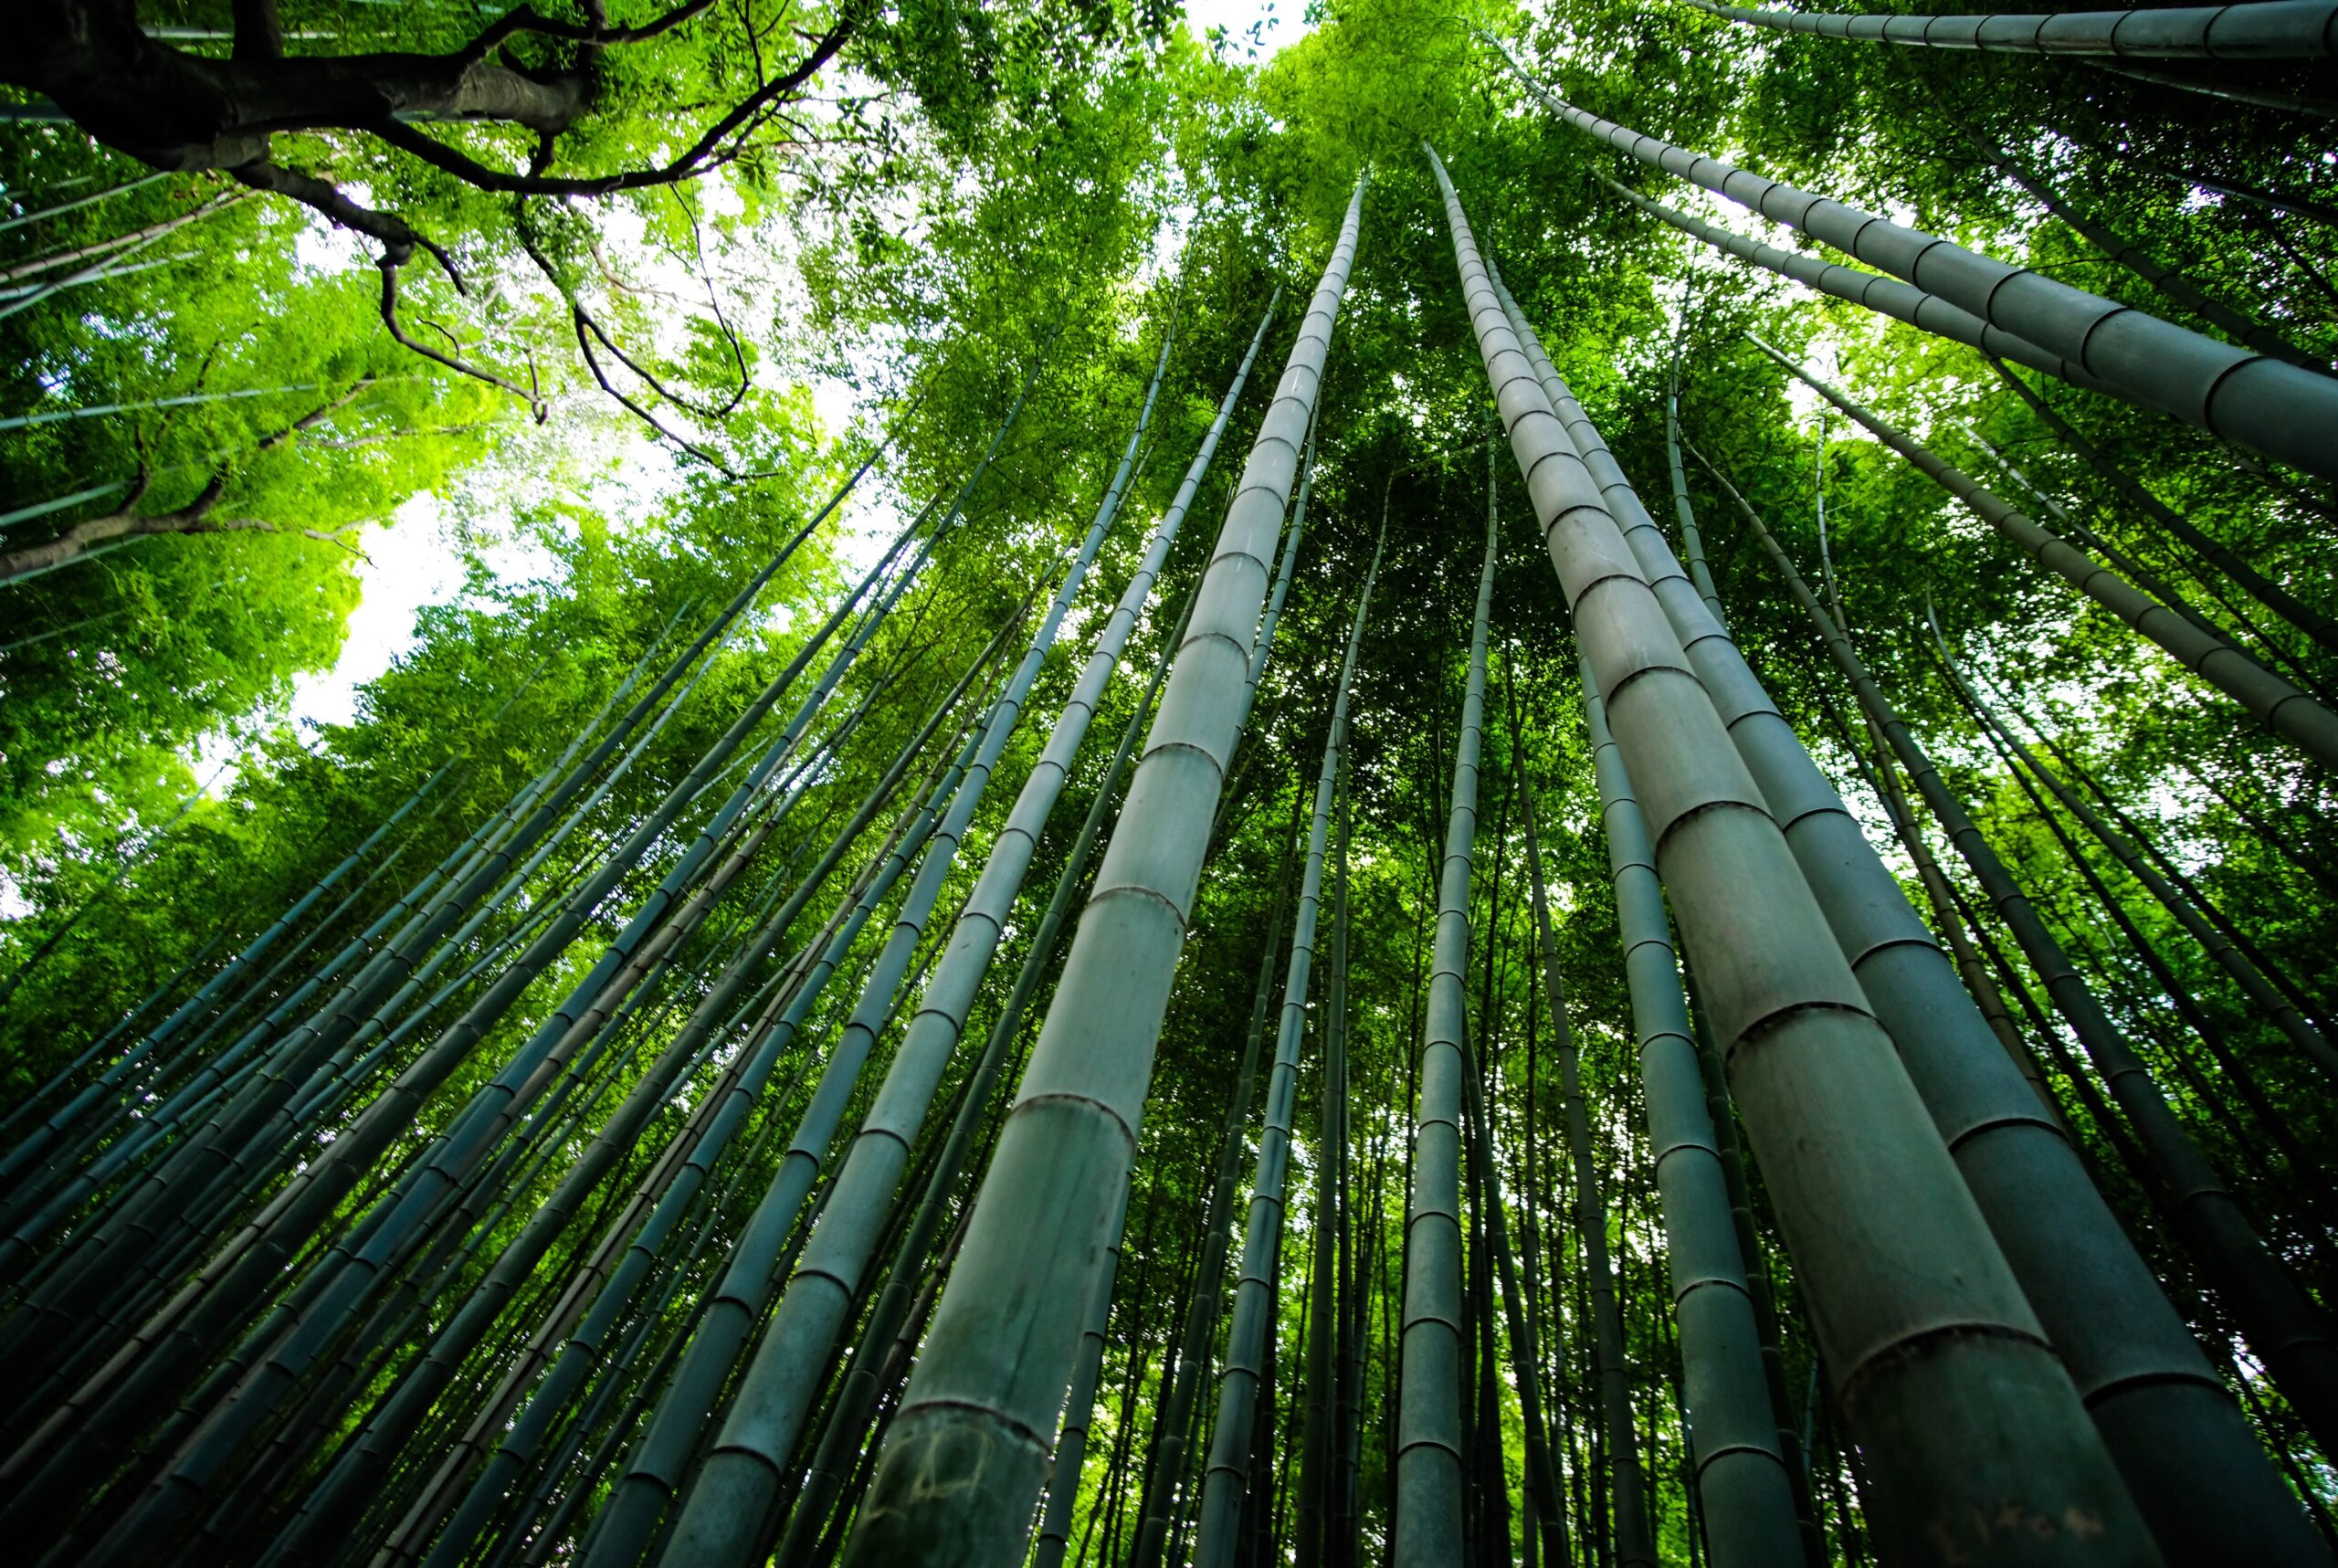 Whitish Bamboo Forest, Surabaya (Hutan Bambu Keputih, Surabaya)